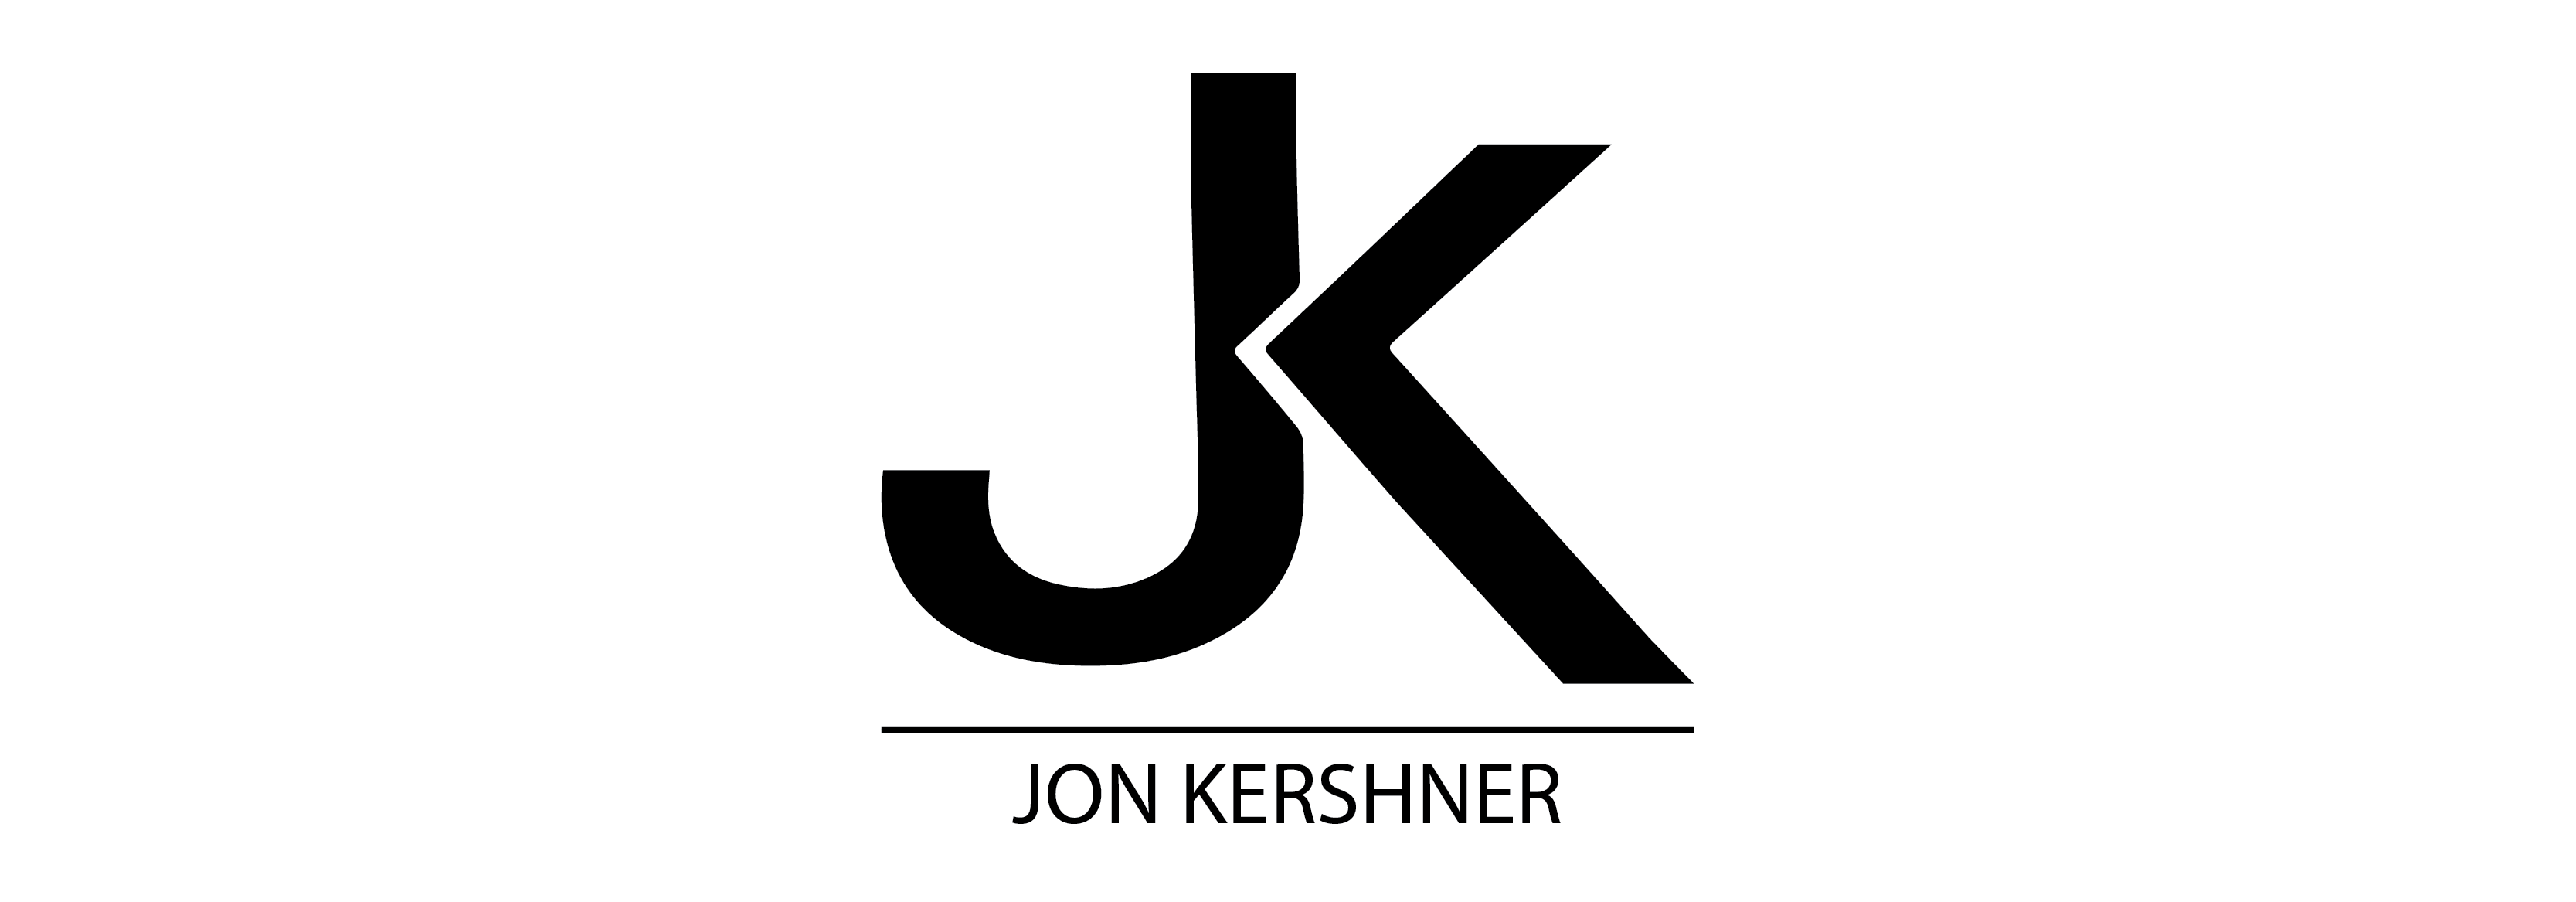 Jon Kershner